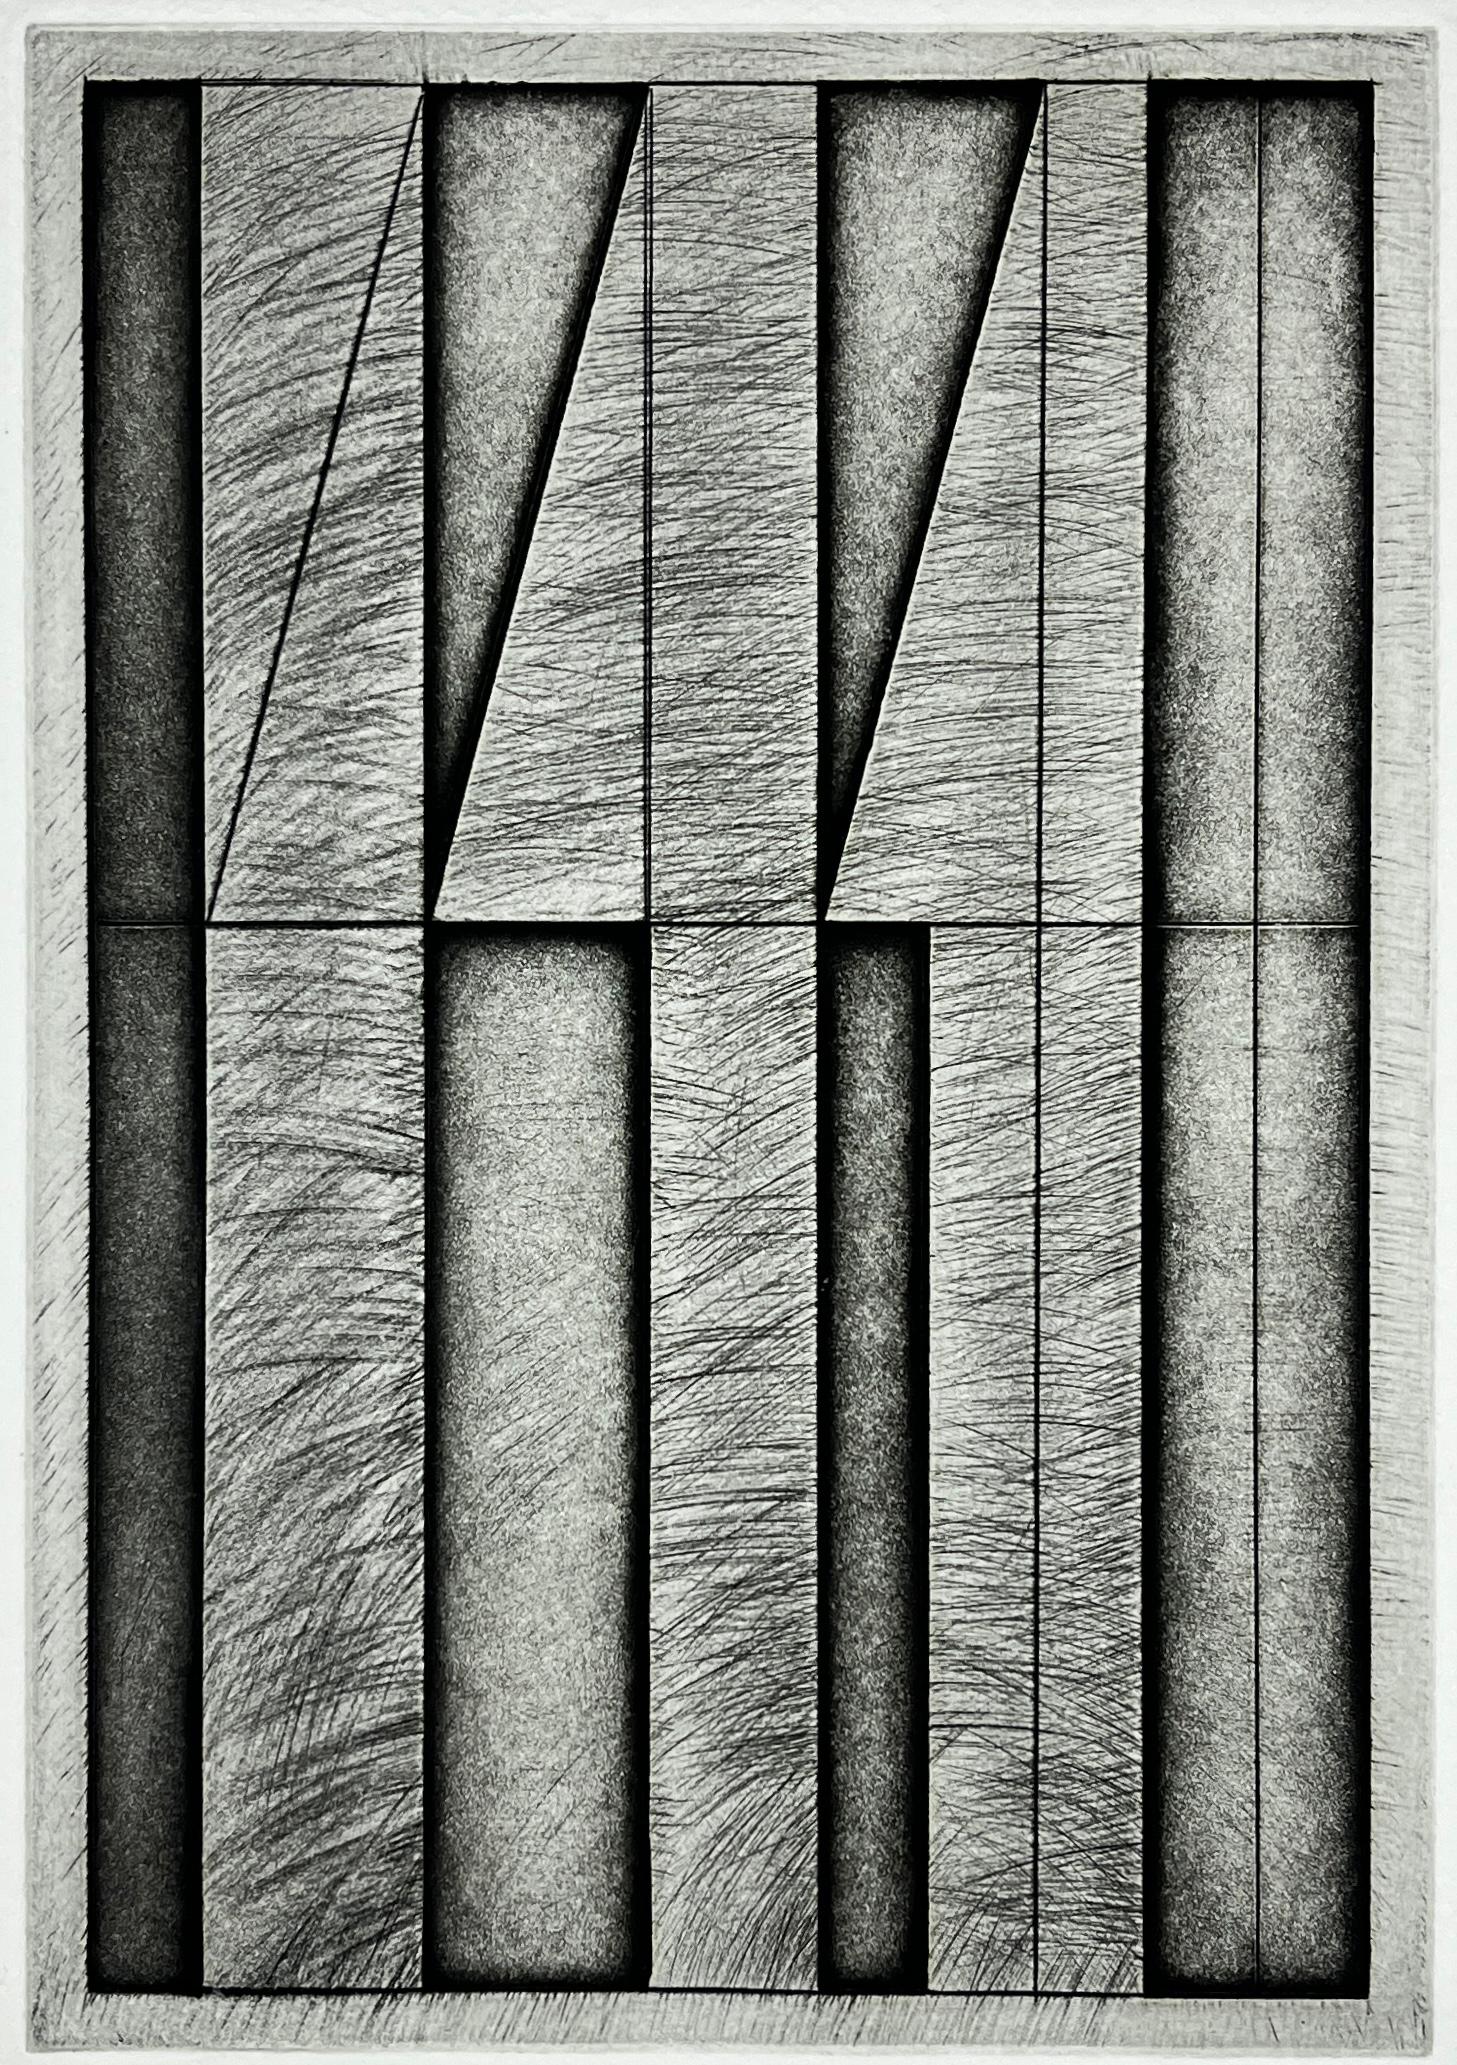 American 1986 signierter Original-Kunstdruck Radierung in limitierter Auflage  15x11 Zoll. – Print von Denis Long